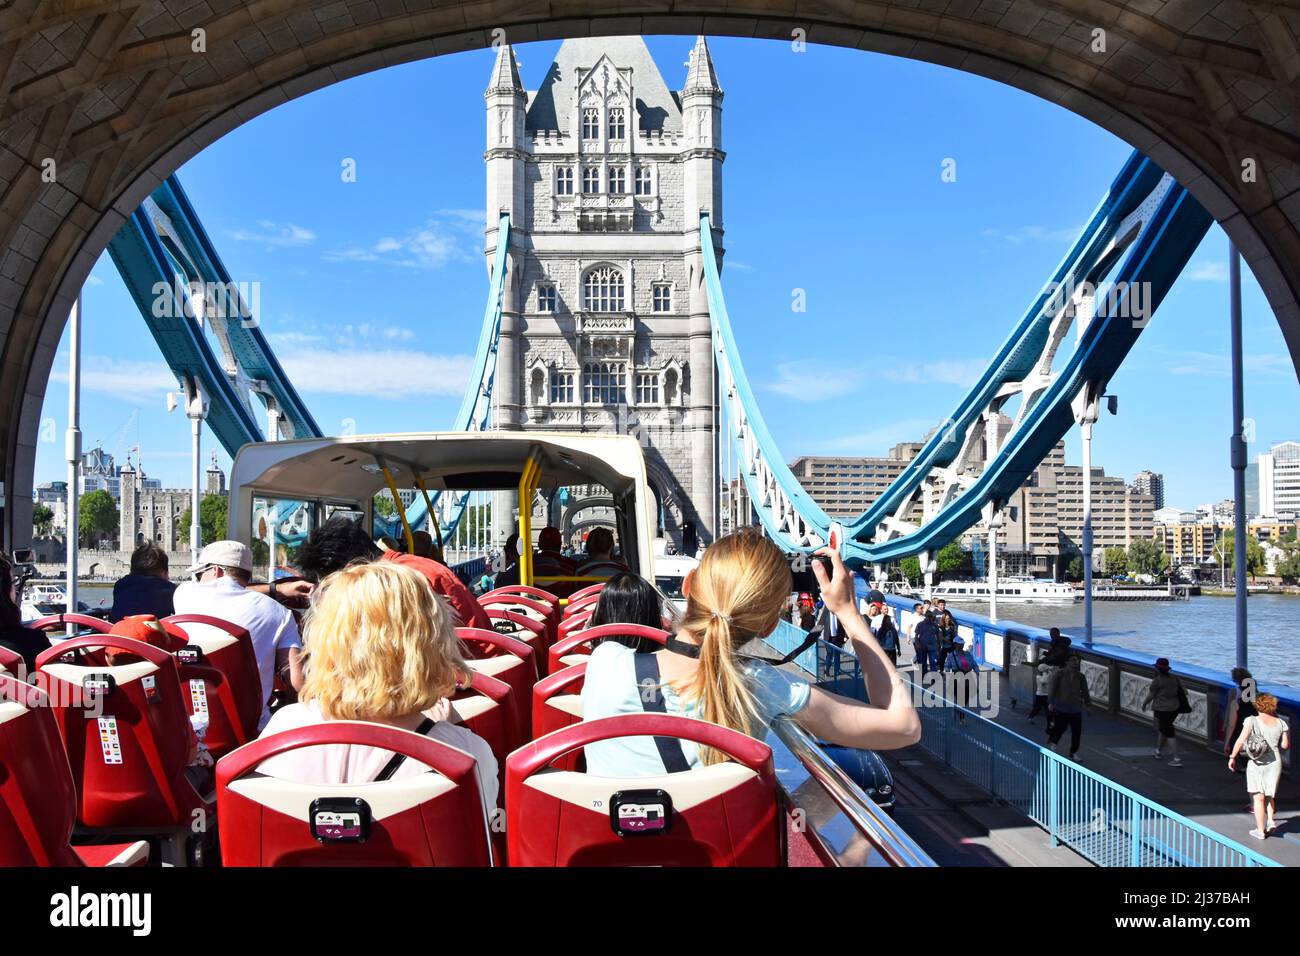 Volver ver a las mujeres en autobús turístico de dos pisos descubierto Londres tour bajo el arco de la histórica carretera Tower Bridge cruzando la marea alta río Támesis Inglaterra Reino Unido Foto de stock